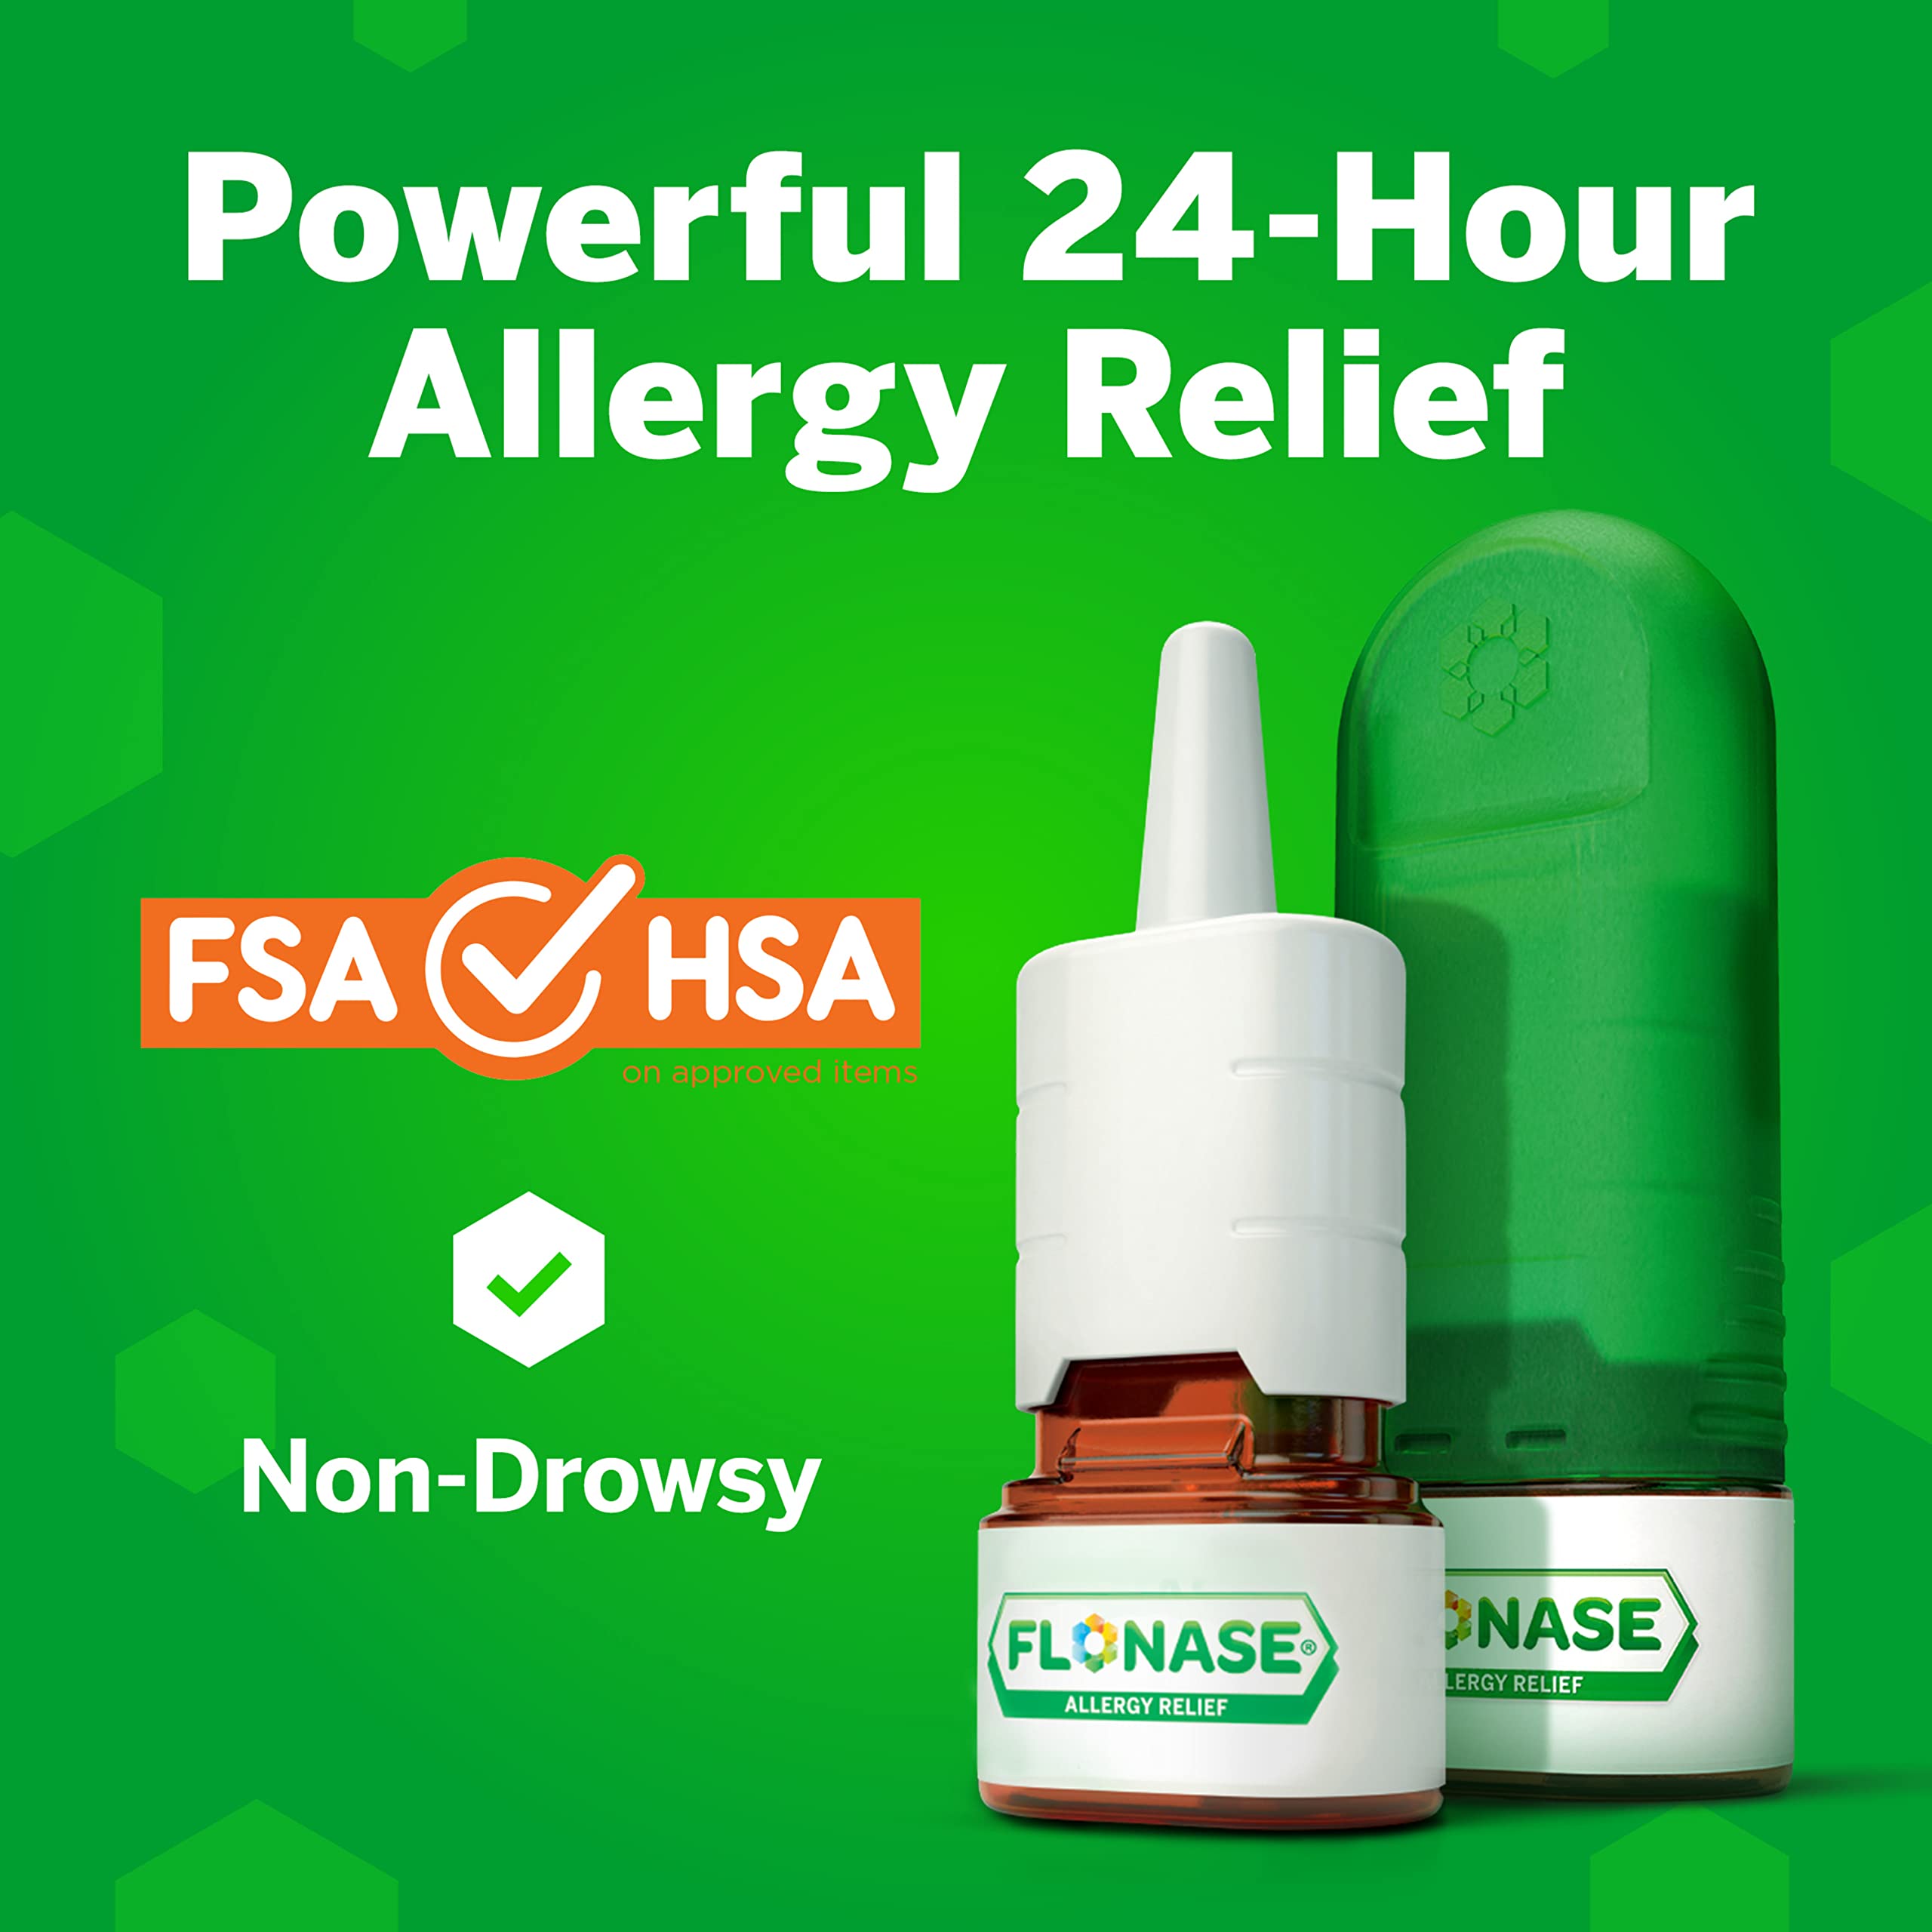 Flonase Allergy Relief Nasal Spray, 24 Hour Non Drowsy Allergy Medicine, Metered Nasal Spray - 144 Sprays (Pack of 2)